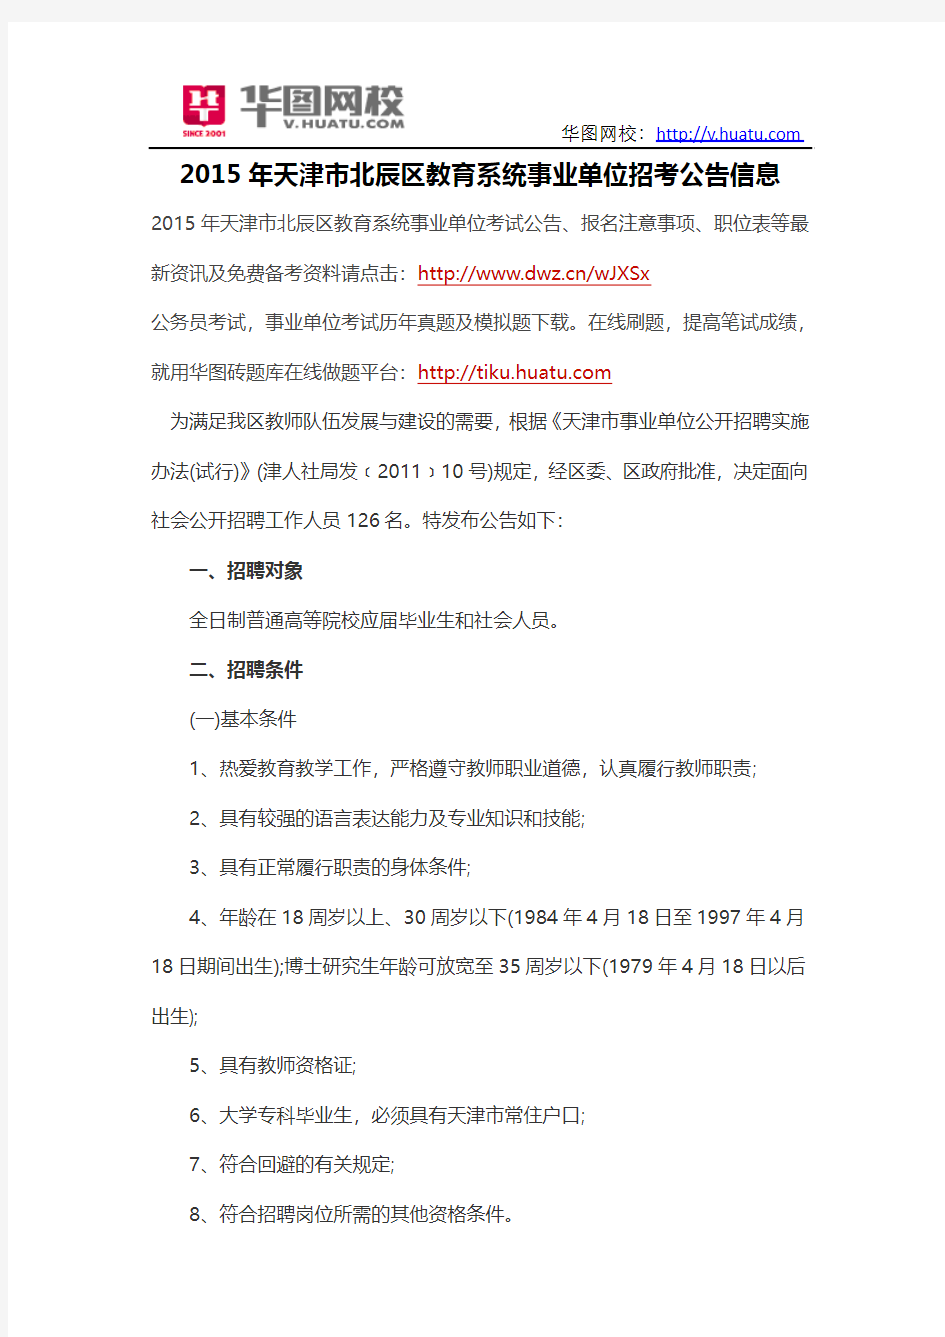 2015年天津市北辰区教育系统事业单位招考公告信息